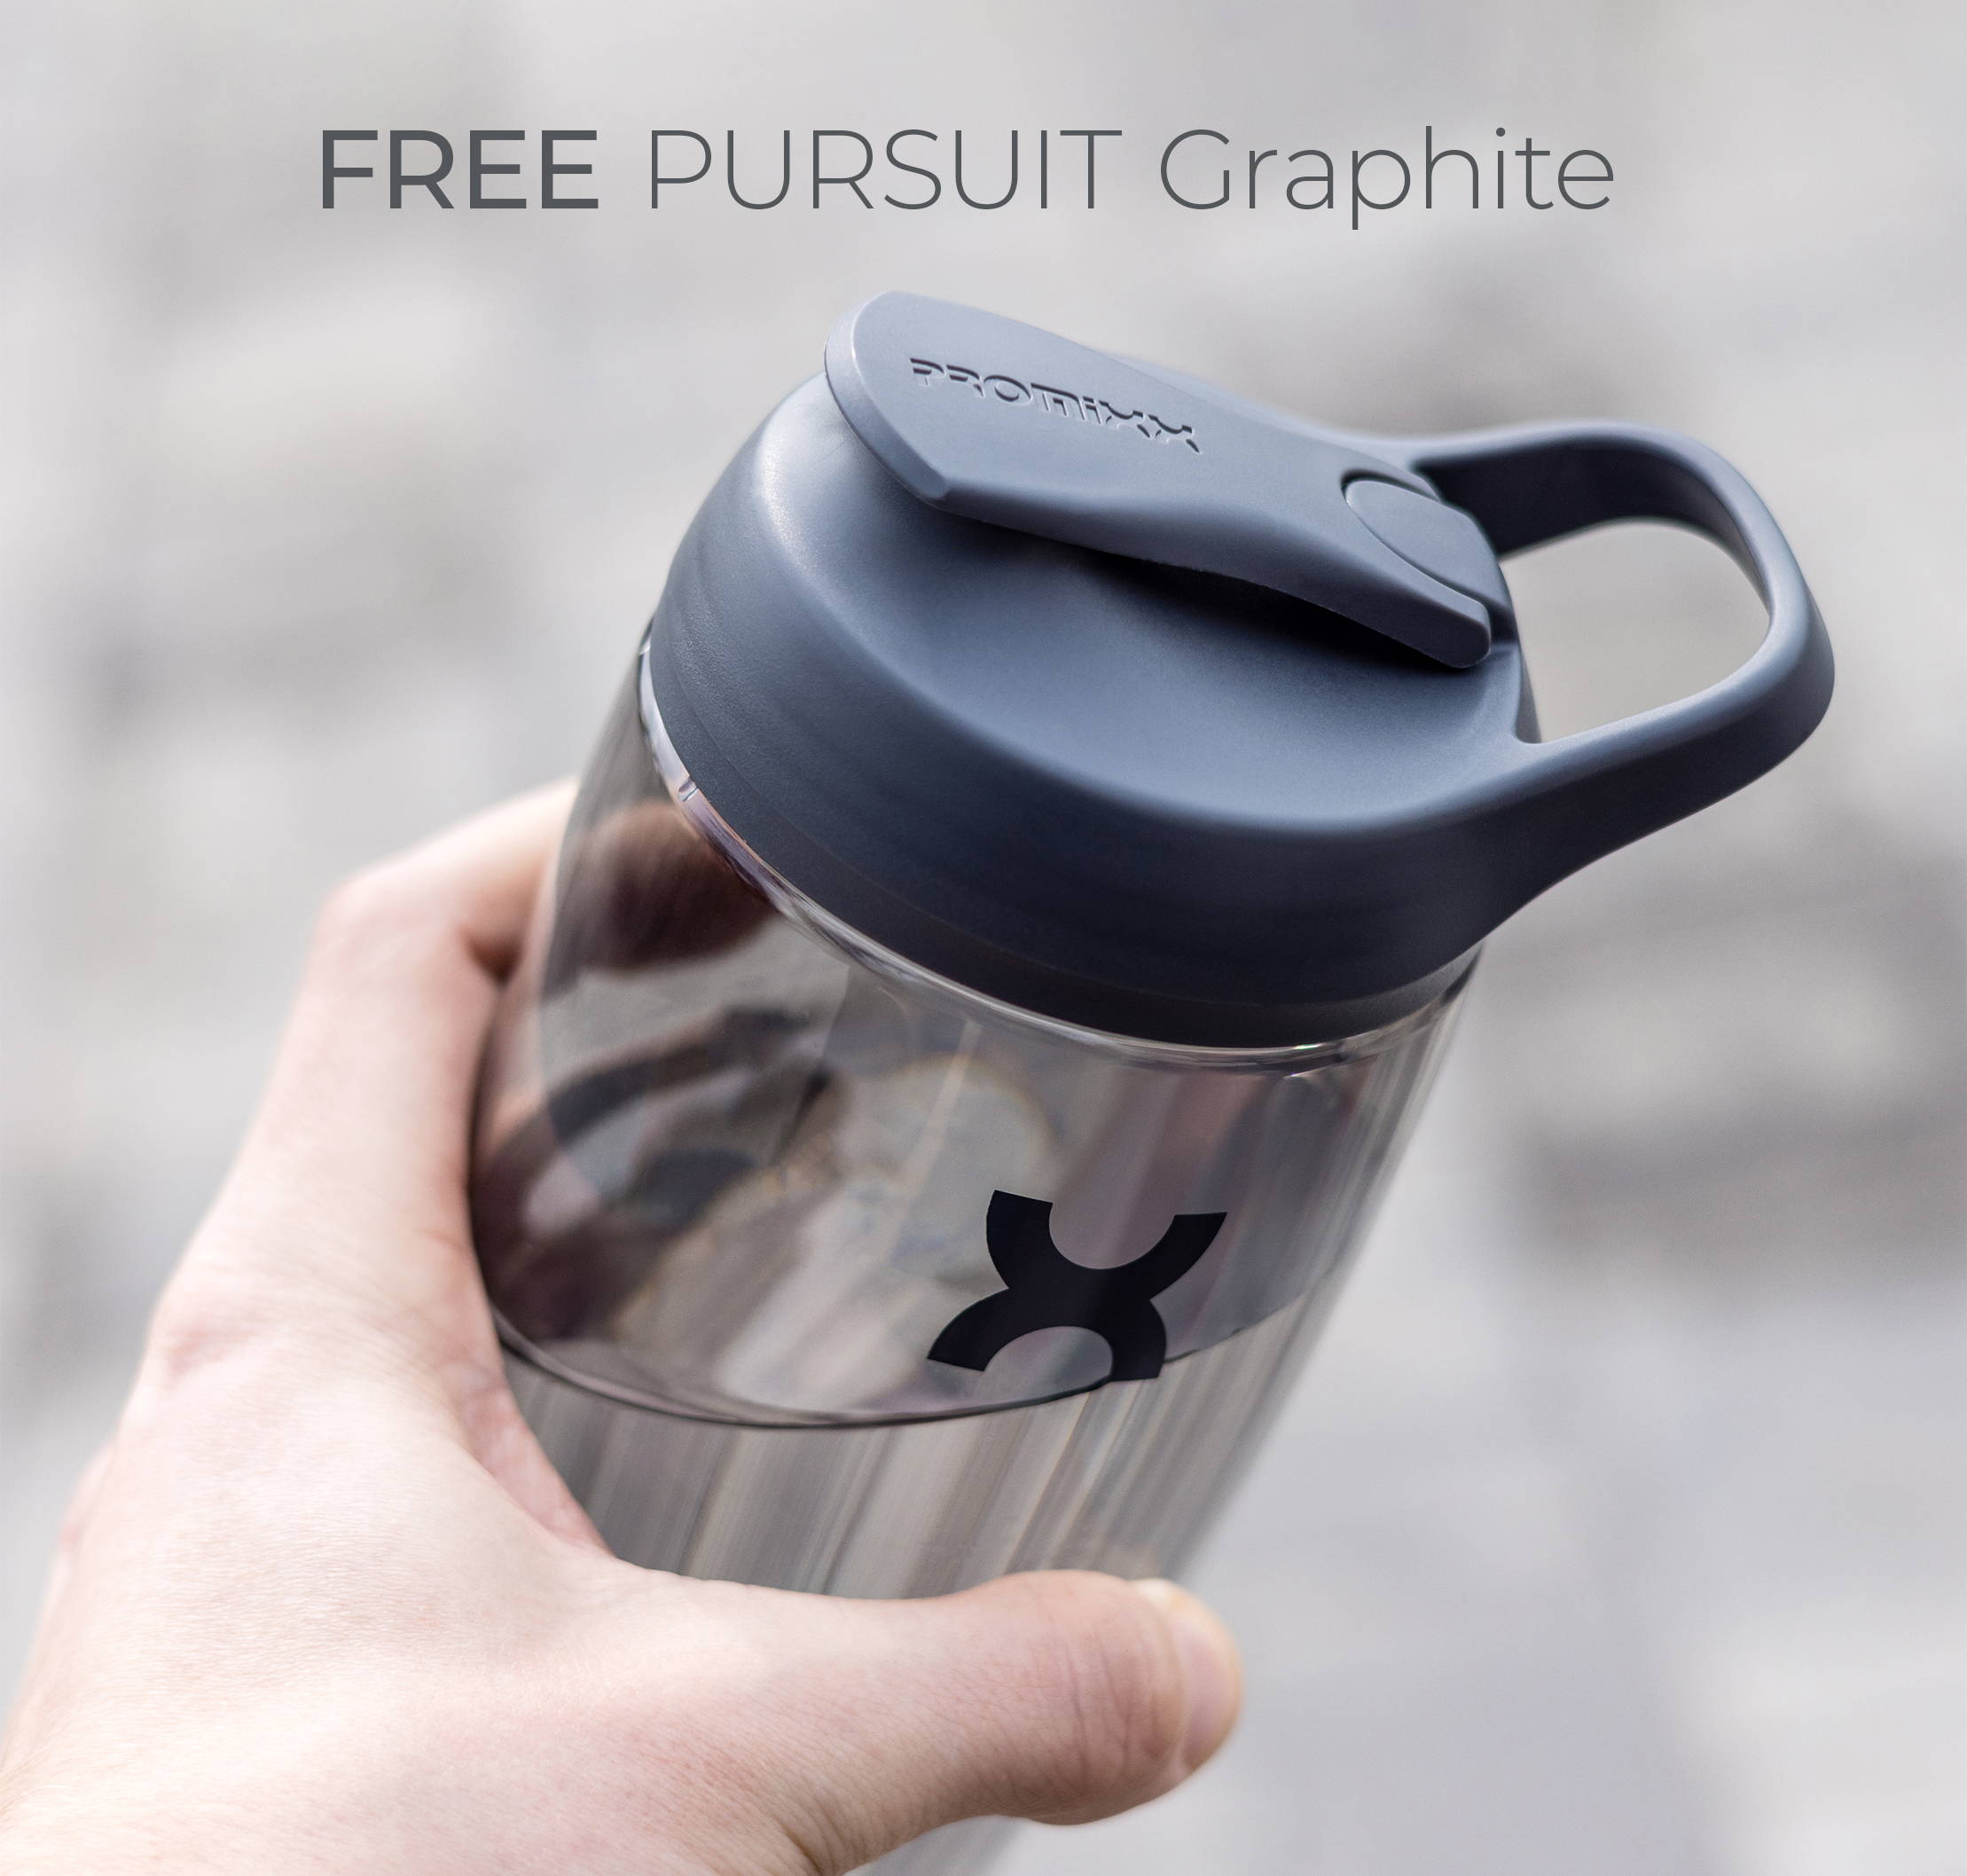 promixx pursuit classic shaker bottle graphite gray